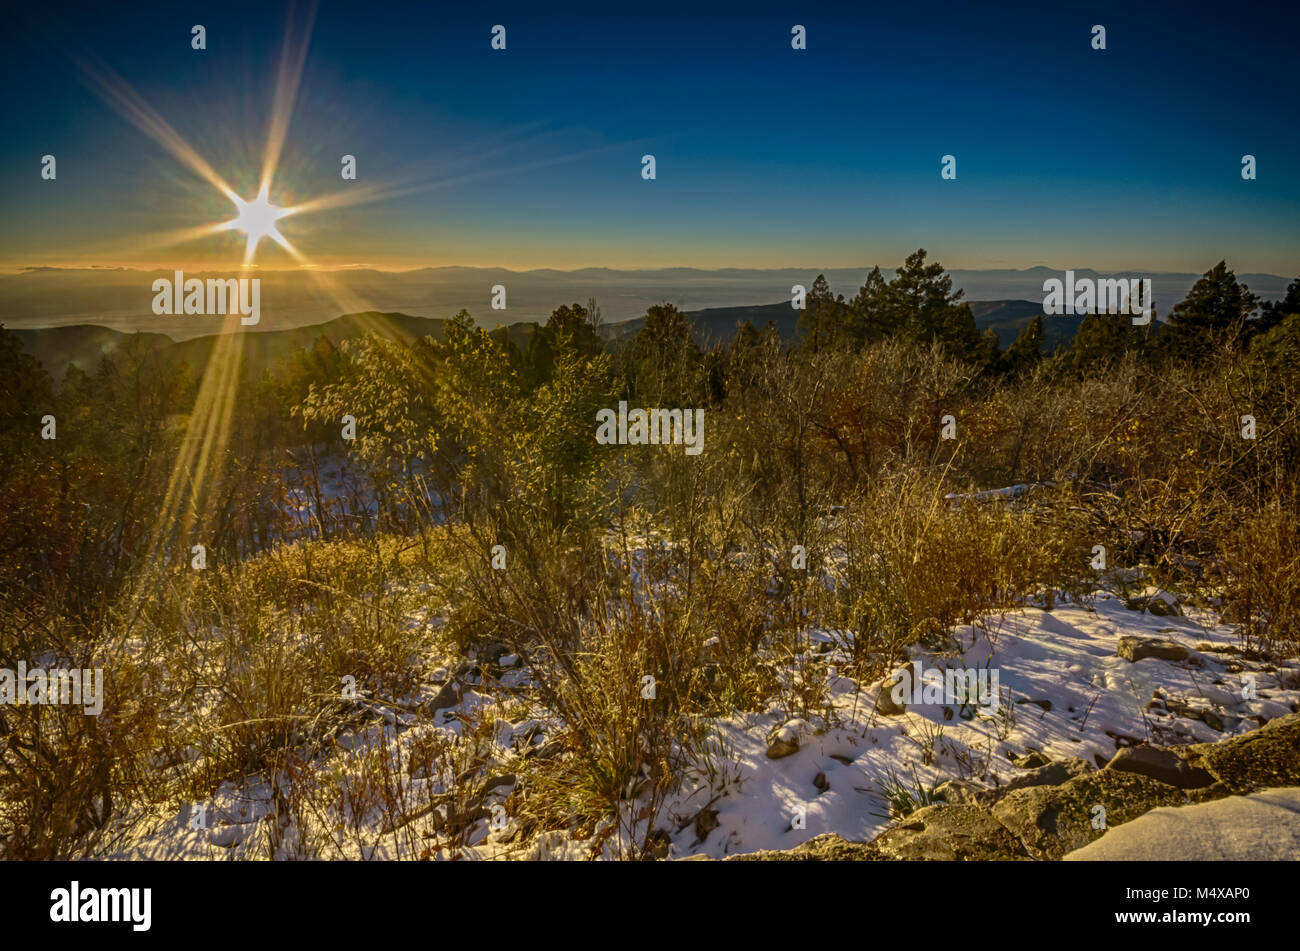 Eine solare Starburst über einen Berg Schnee Landschaft bei sonnenfleck Astronomie Visitor Center in der Nähe von Sedona, NM. Stockfoto